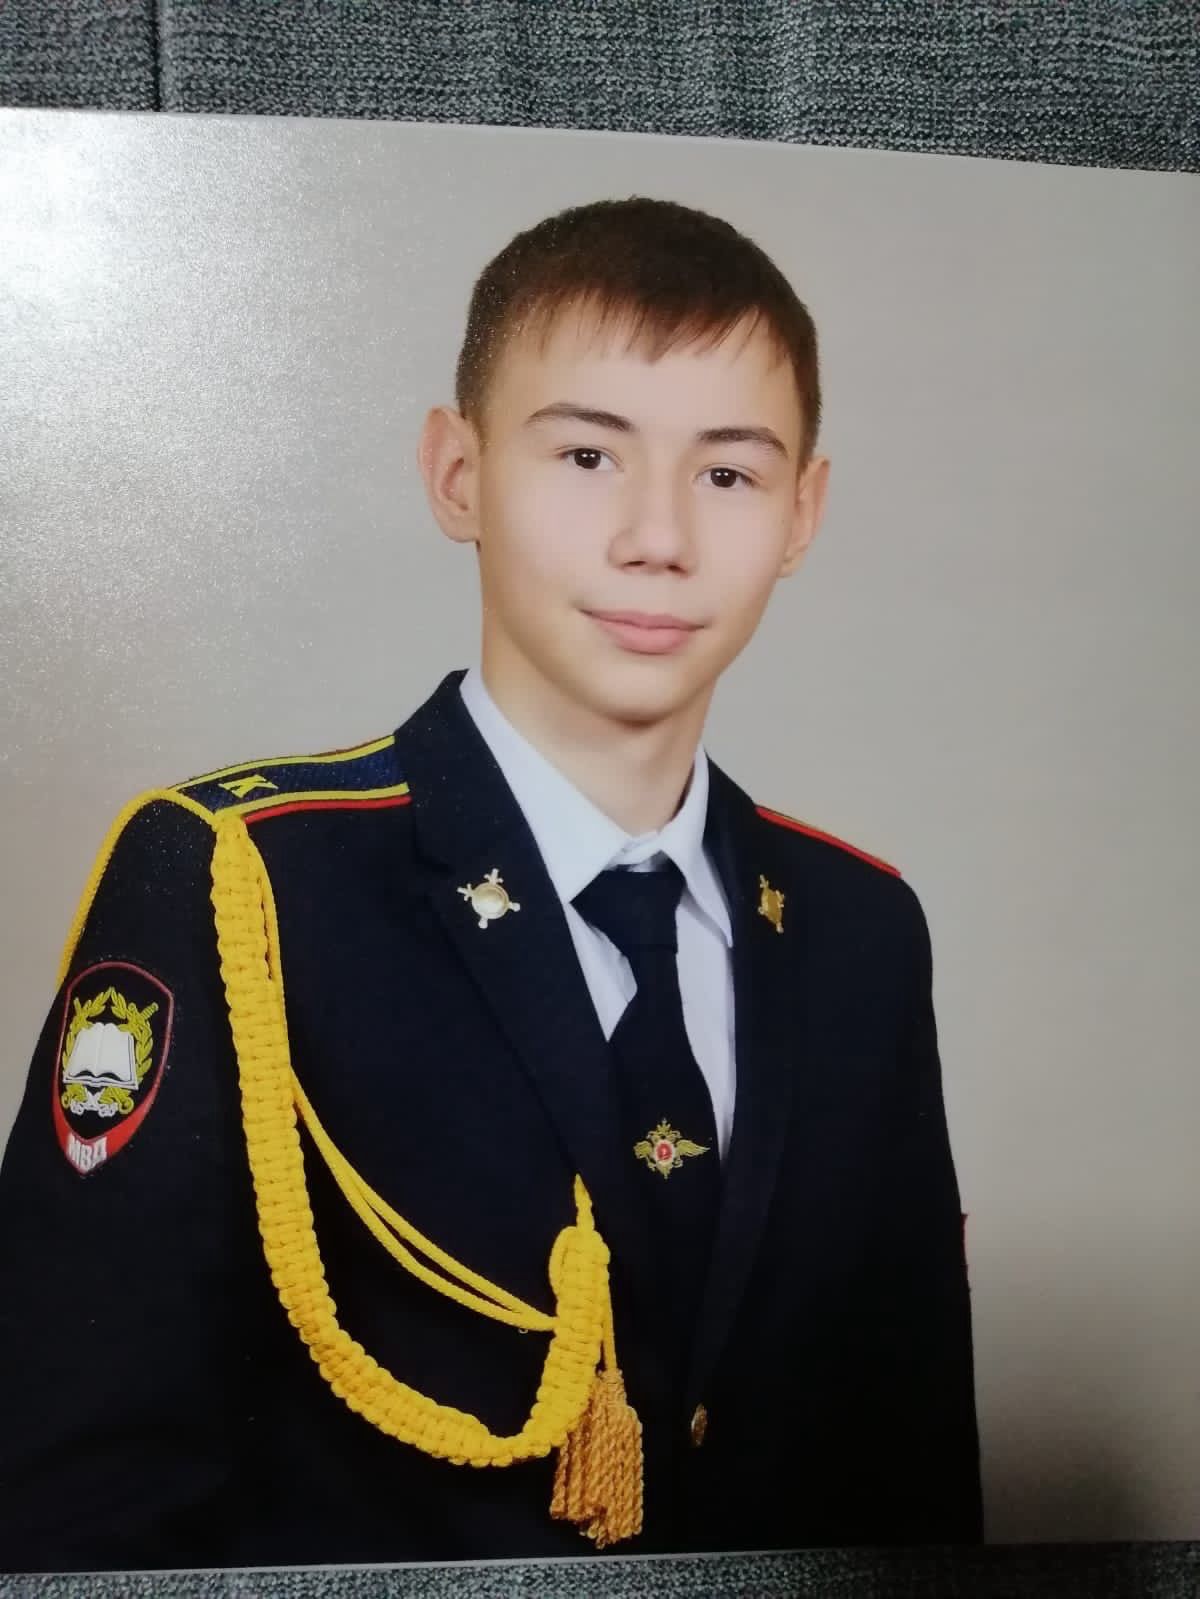 Сегодня, 17 февраля отмечает свое 17-летие Посадов Даниил Валерьевич